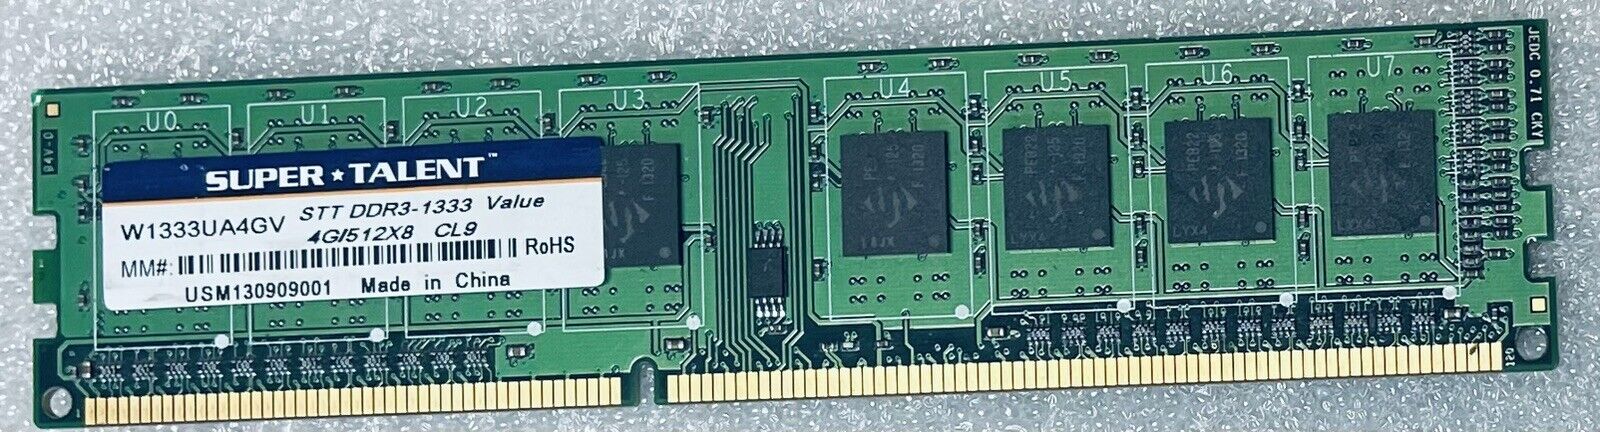 Super Talent 4GB DDR3 PC3-10600 DIMM 1333UA4GV DESKTOP Ram